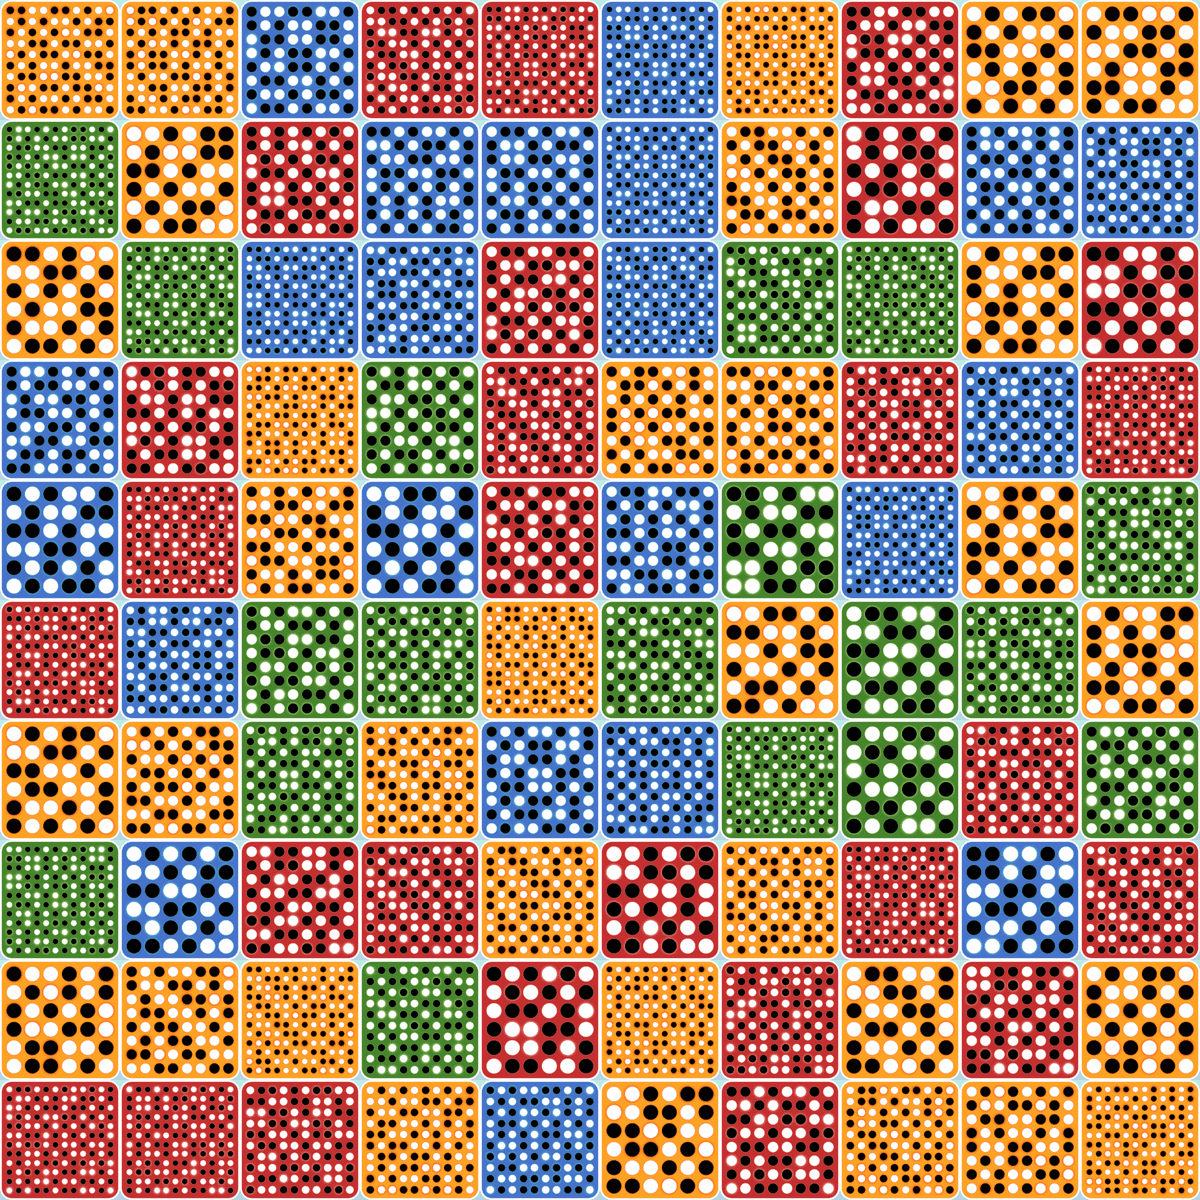 100 Bineroo grids